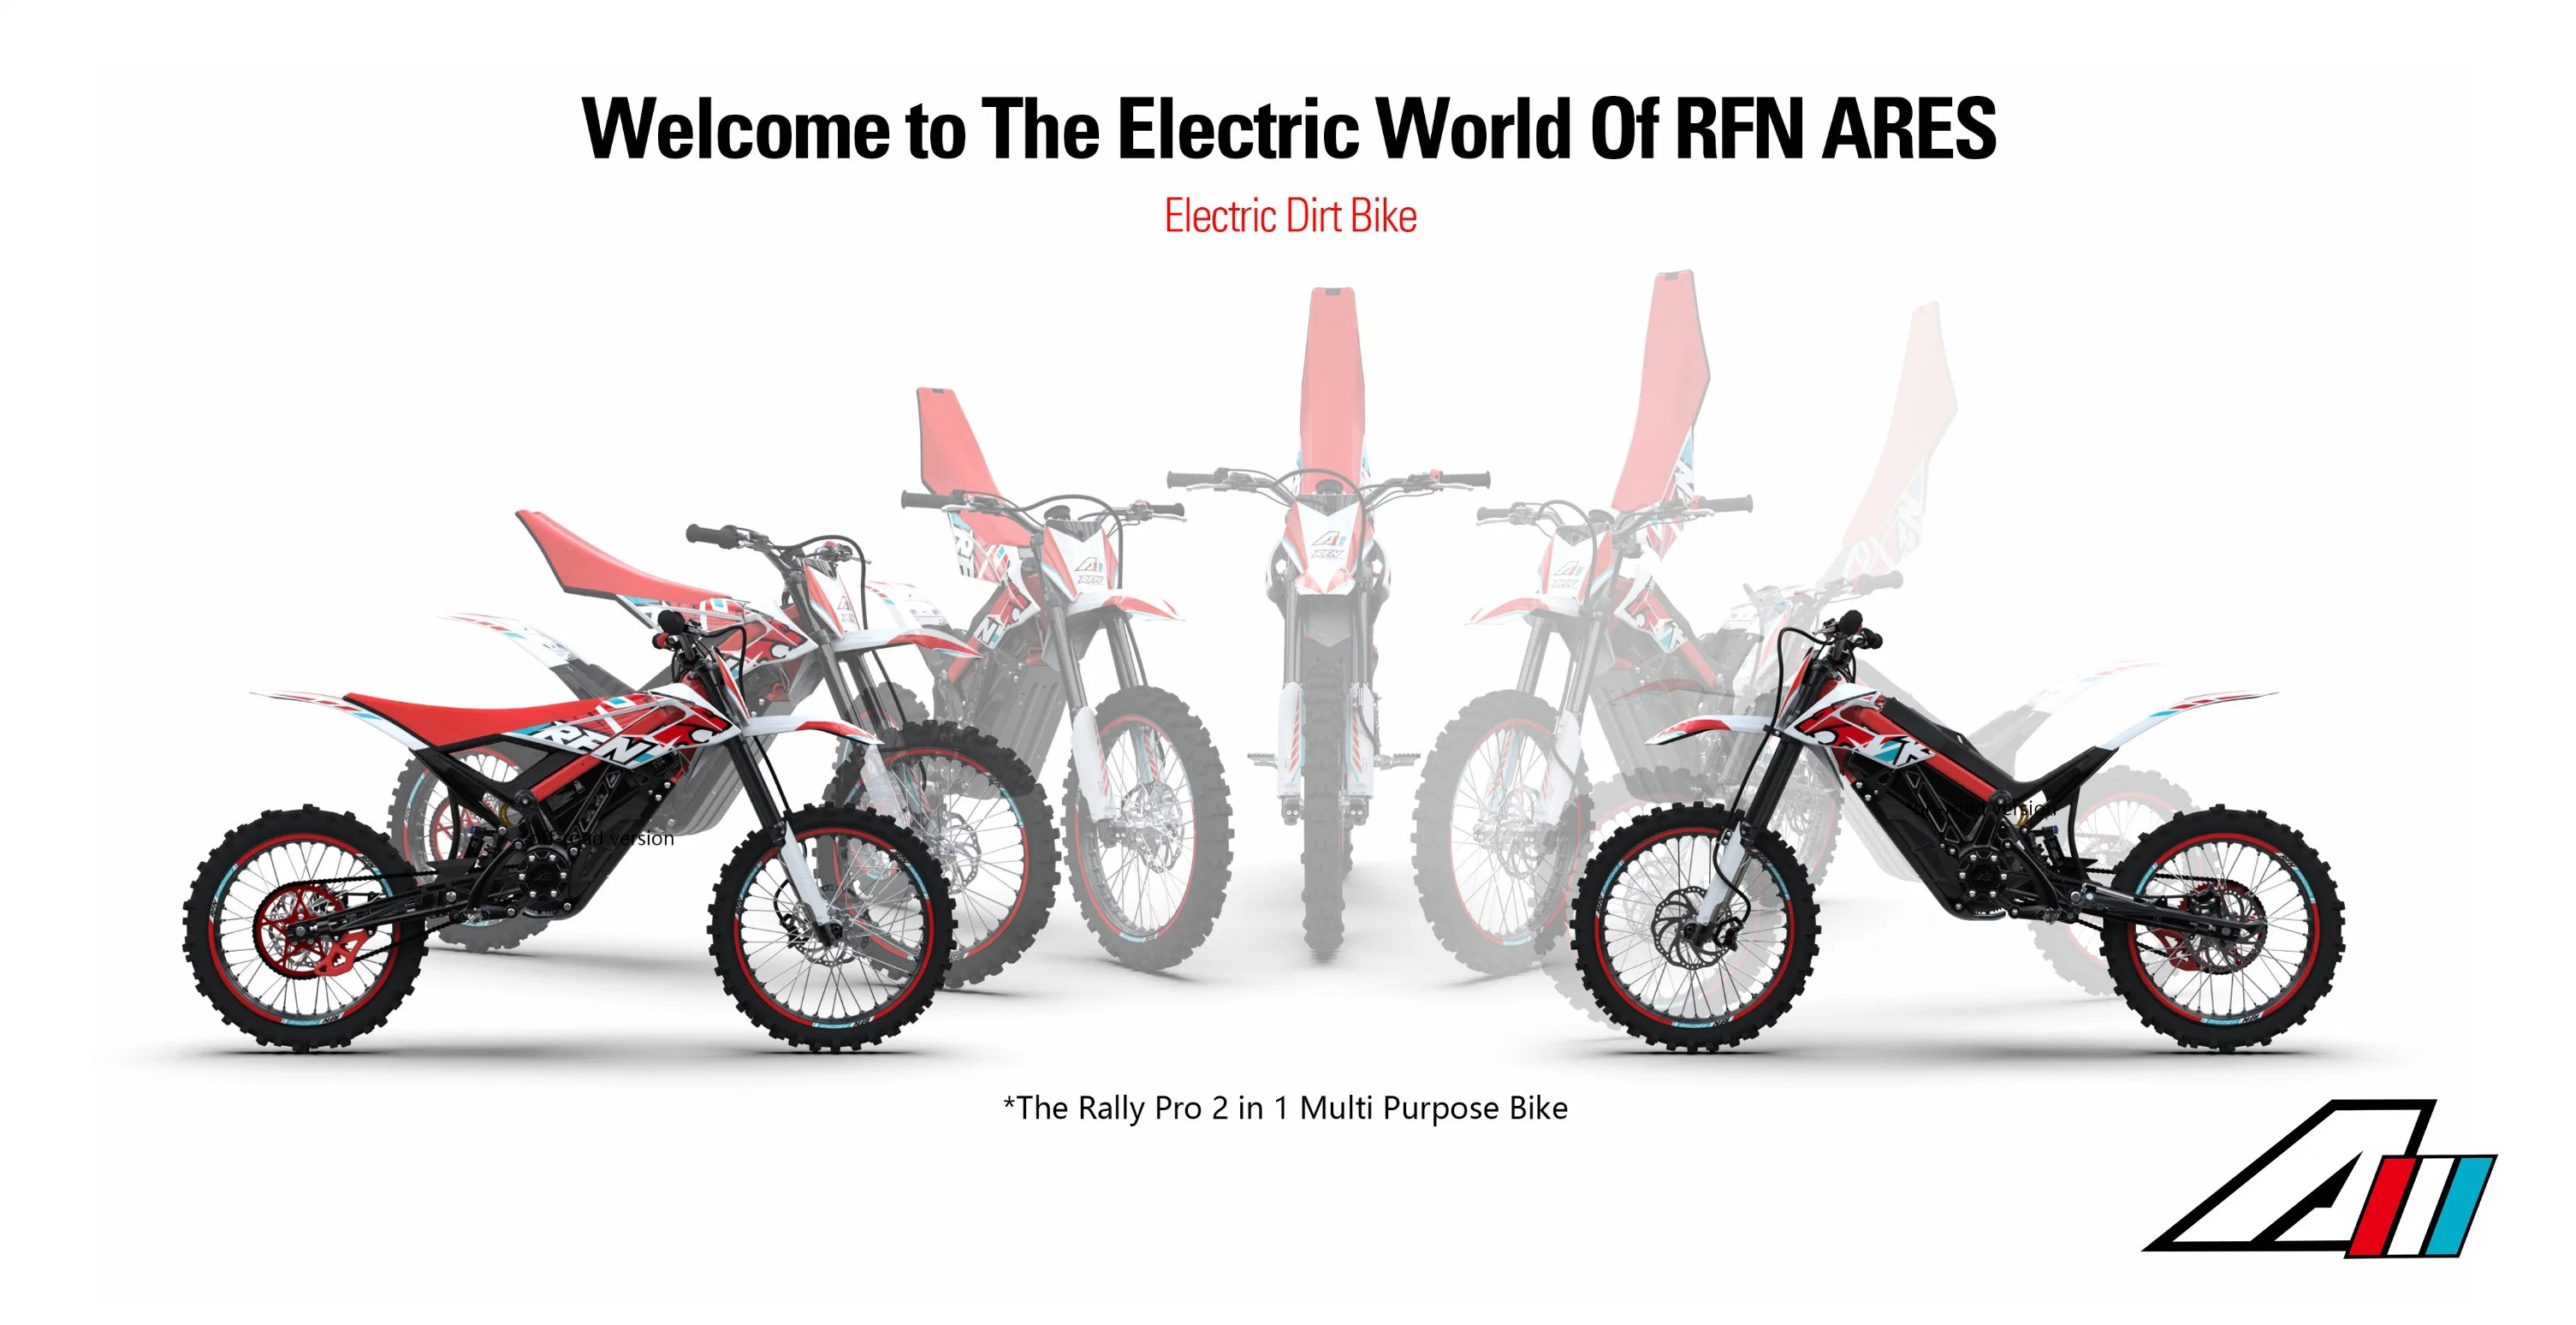 دراجة Rfn Ares Rally PRO Electric off Road Dirt Bike Electric Motorcycle مع بطارية ليثيوم دراجة نارية كهربائية Motocross كهربائية دراجة Pit Bike بالغة Apollo Motorcycle